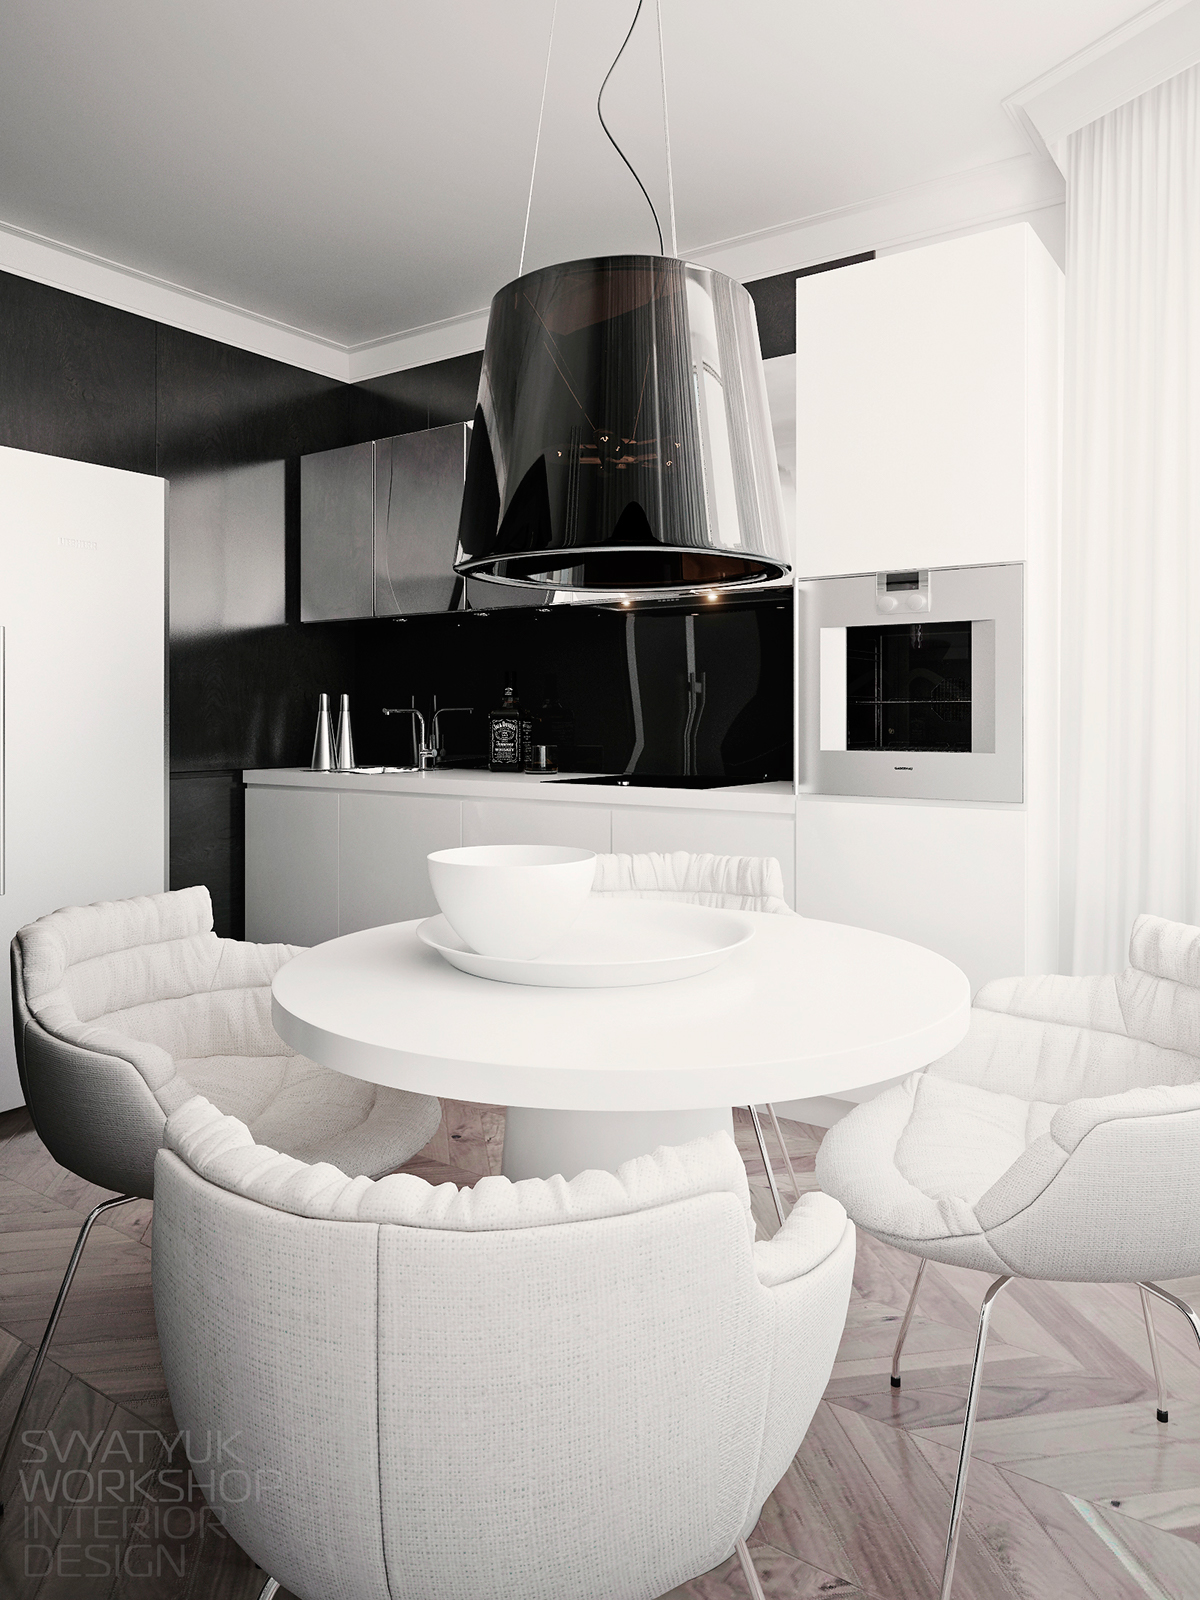 apartment Interior design vray CG kitchen дизайн интерьер кухня 3ds max